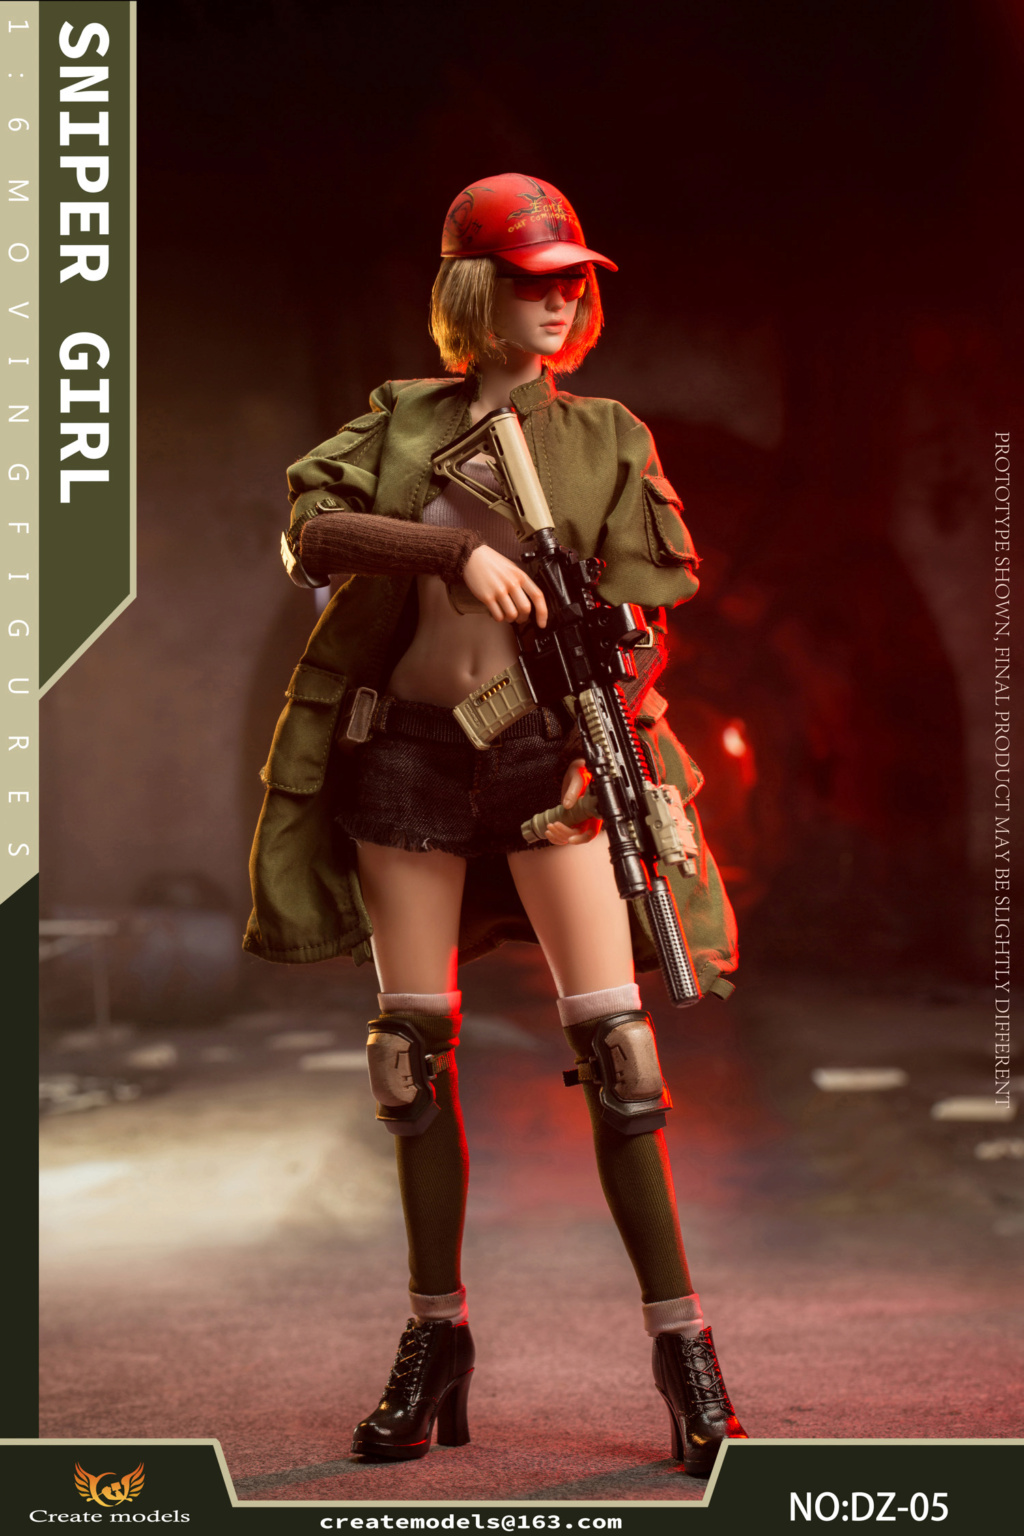 NEW PRODUCT: Createmodels: 1/6 Sniper Girl-Songbird/Lan Action Figures #DZ-05/DZ-06 18512912